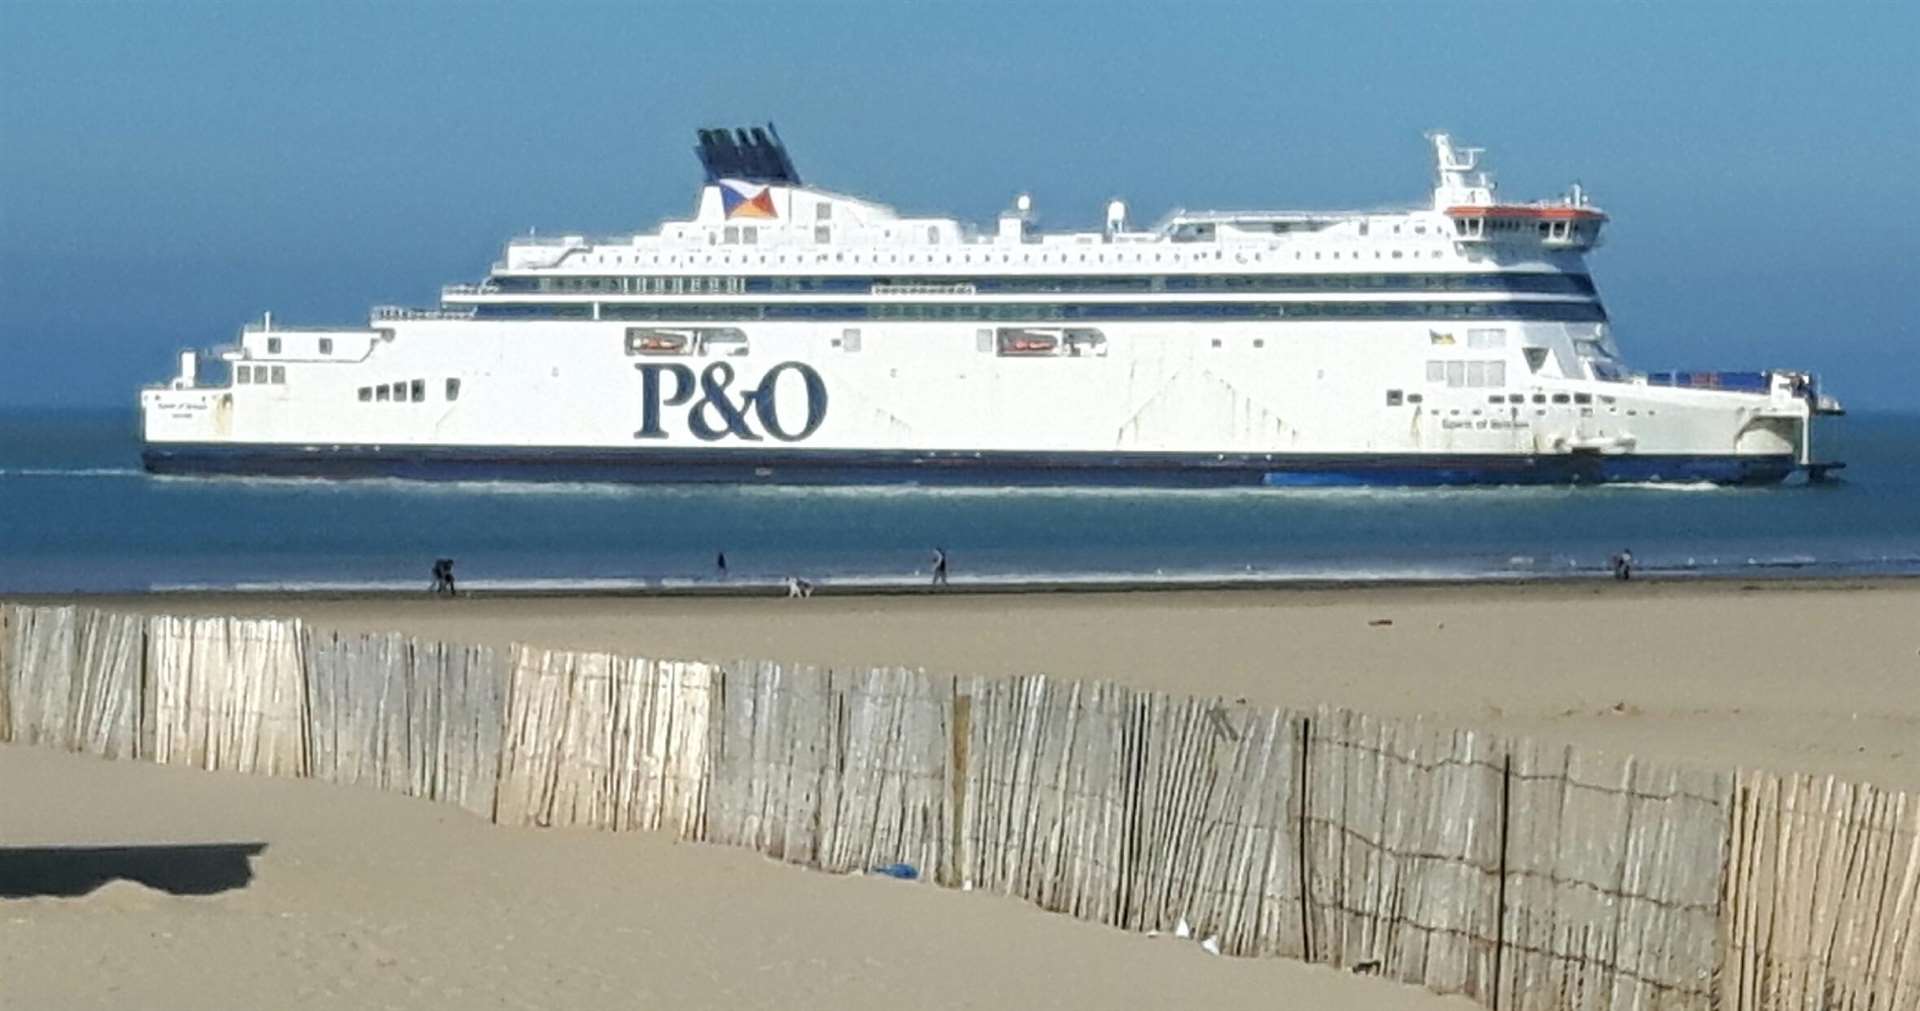 A P&0 vessel outside Calais.